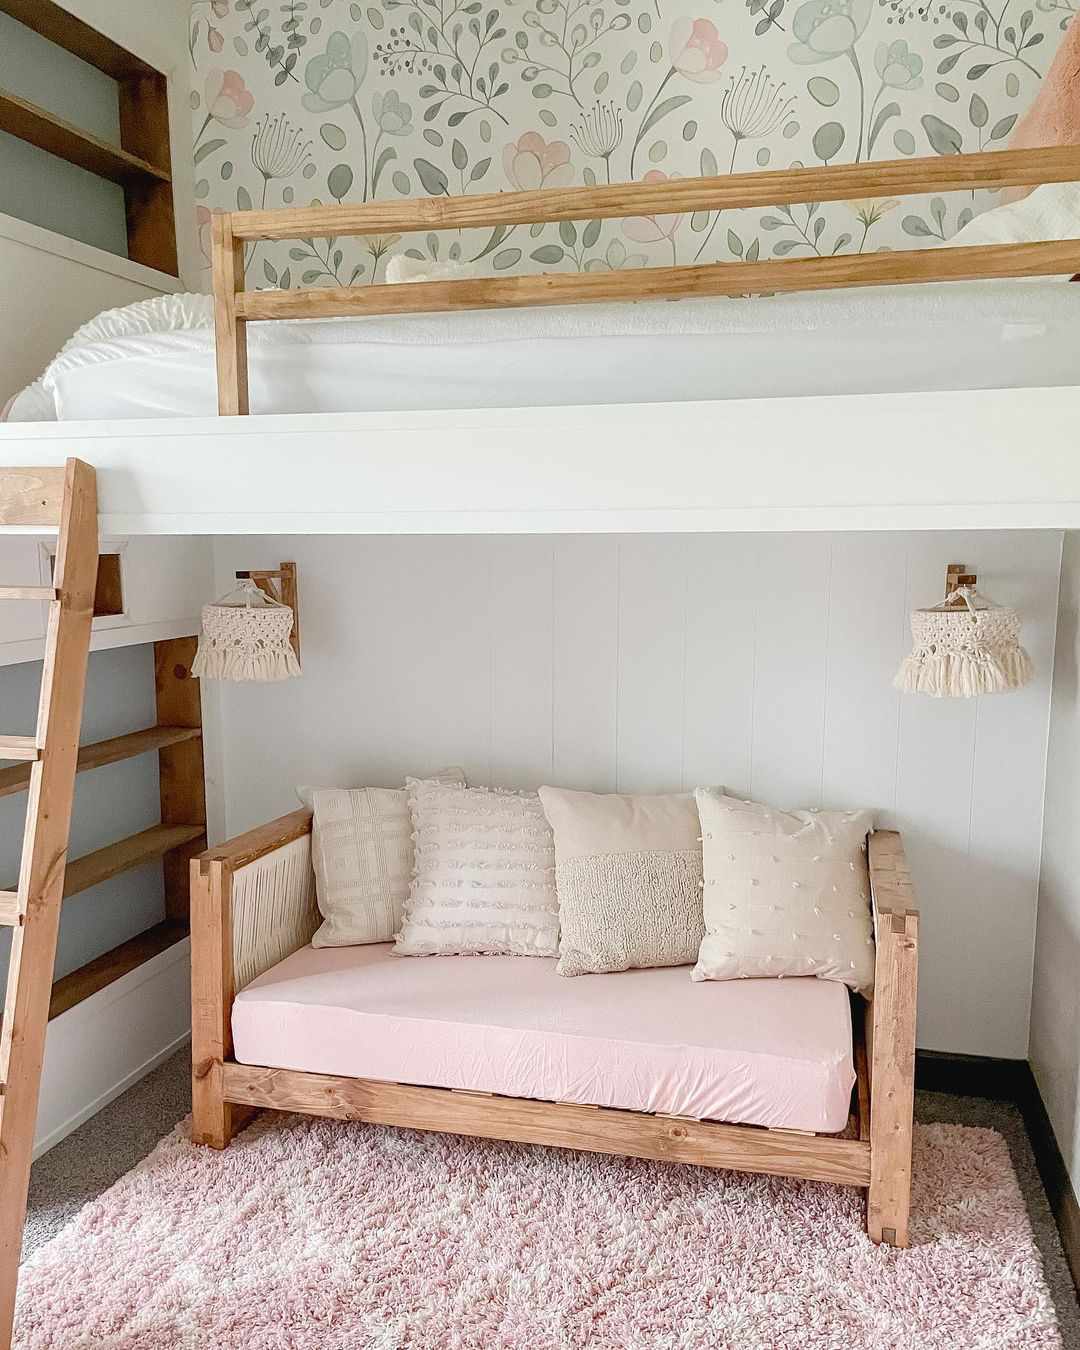 Una cama tipo loft en la habitación de un niño con un pequeño sofá y apliques en el nivel inferior.